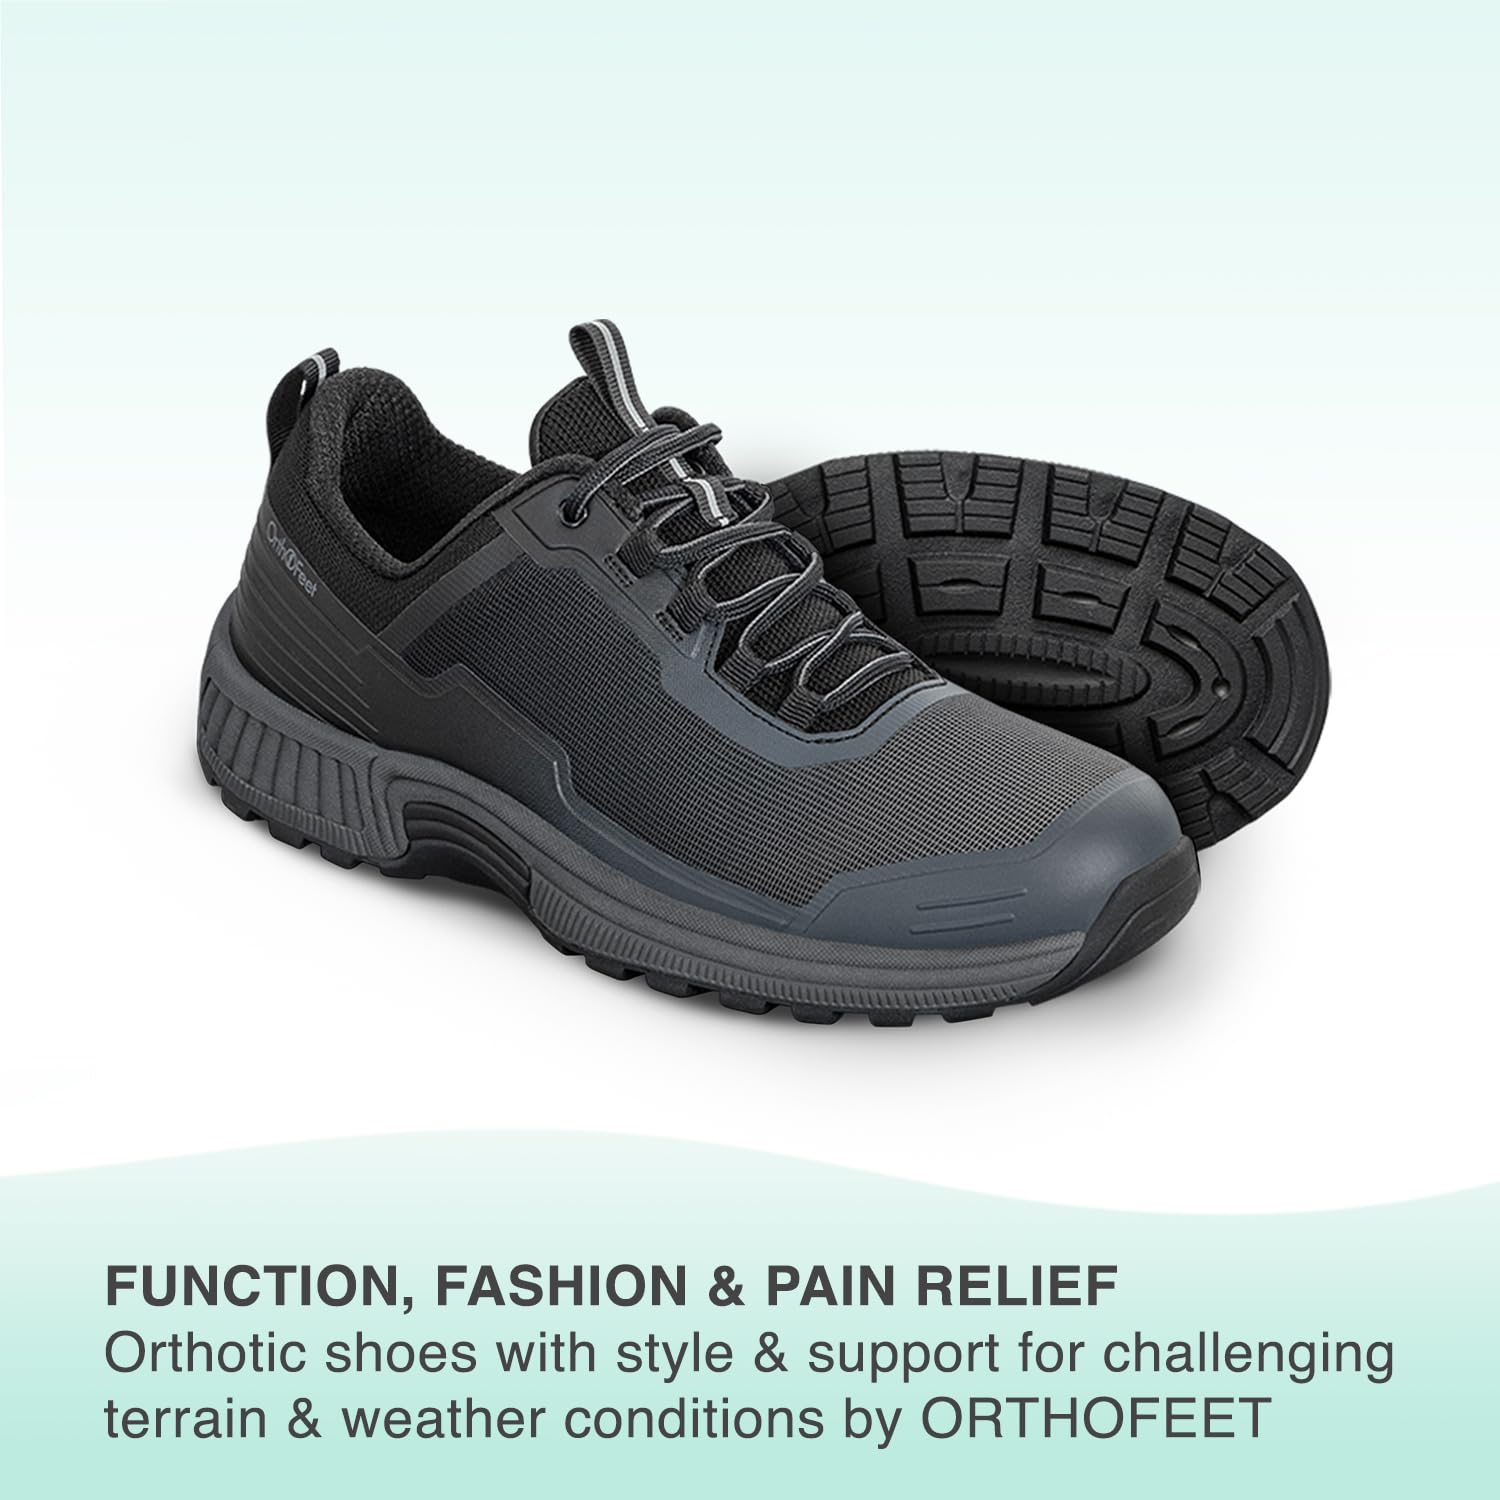 Orthofeet Women's Orthopedic Black Bristol Hiking Shoes, Size 7.5